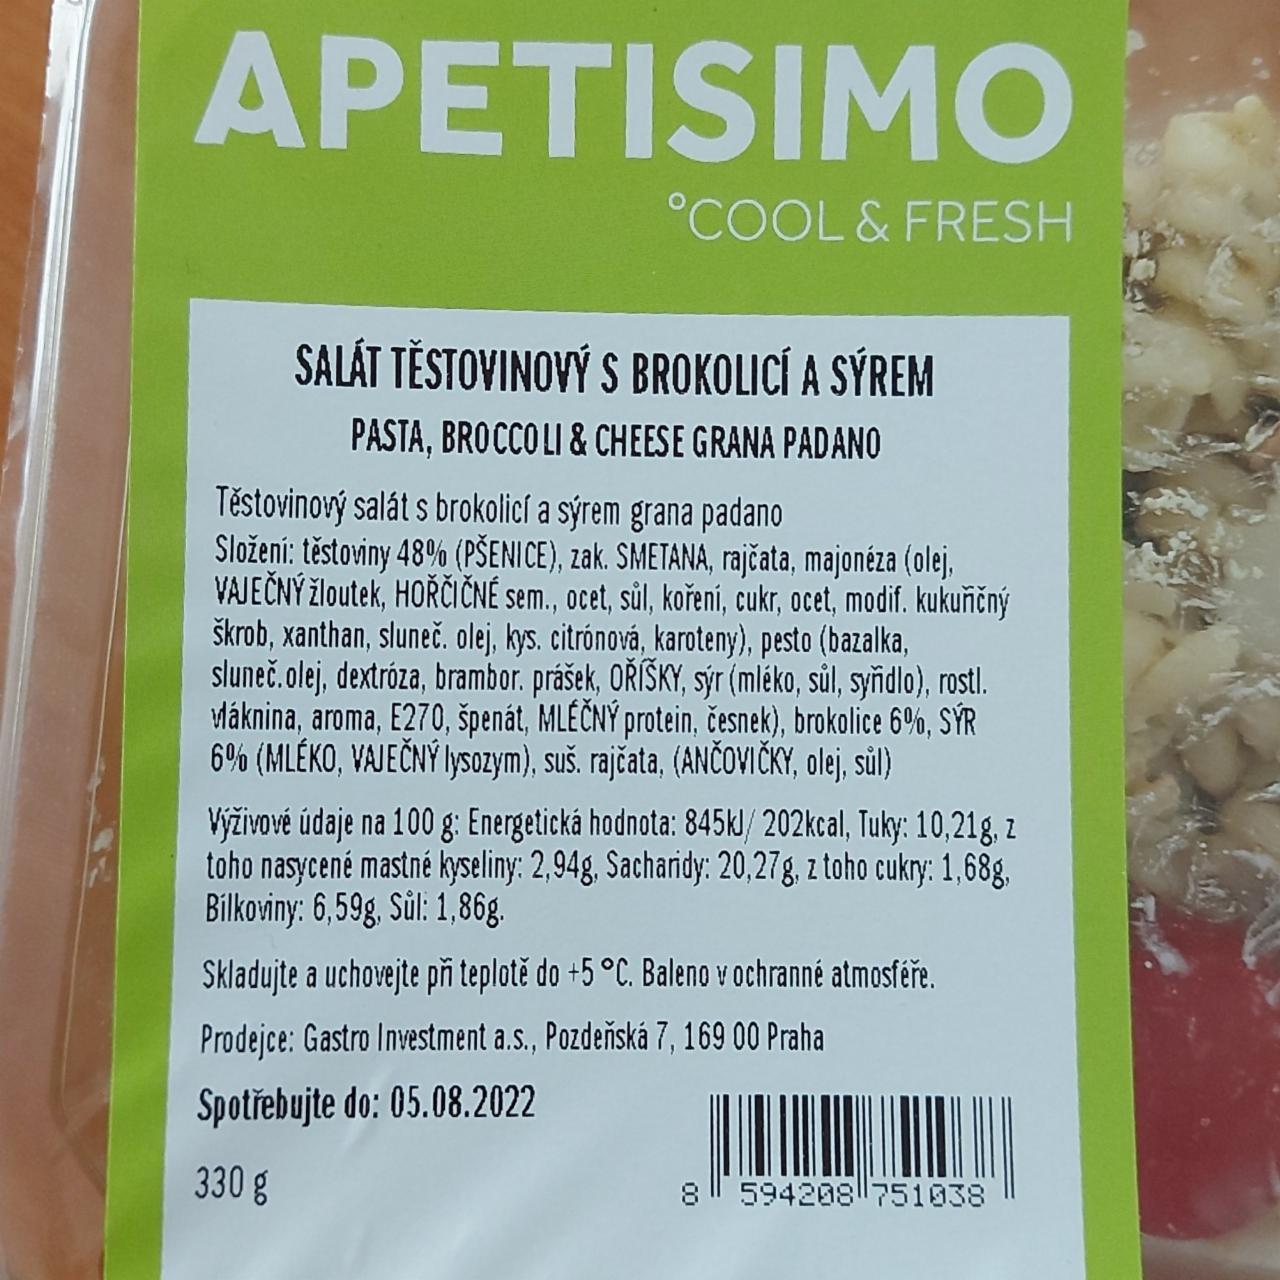 Fotografie - Salát těstovinový s brokolicí a sýrem Apetisimo